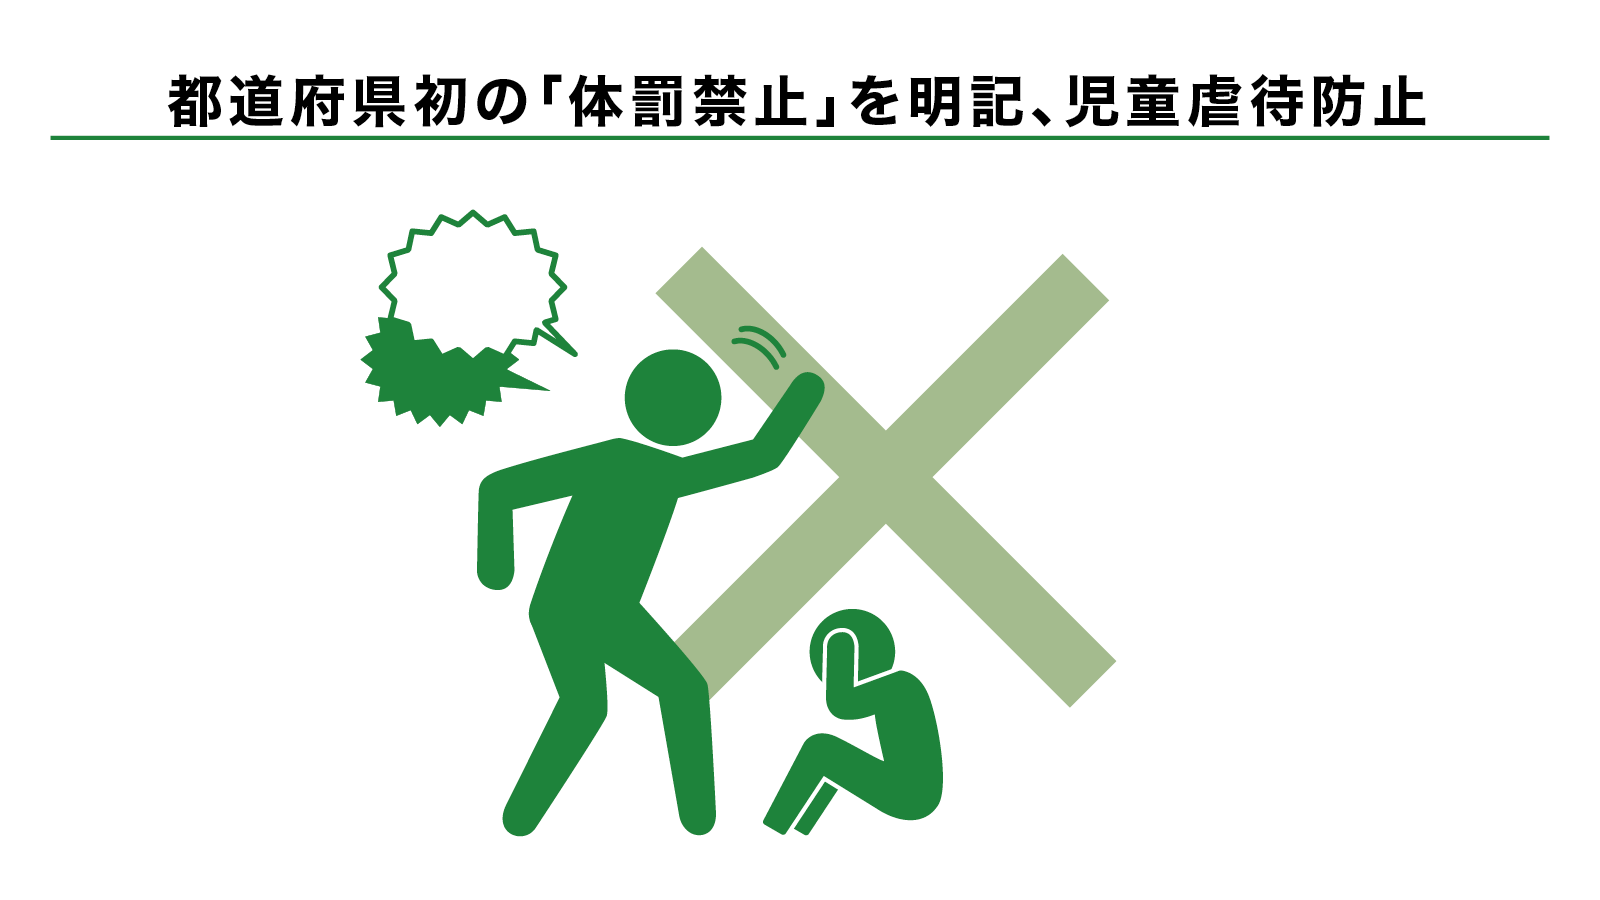 都道府県初の「体罰禁止」を明記、児童虐待防止